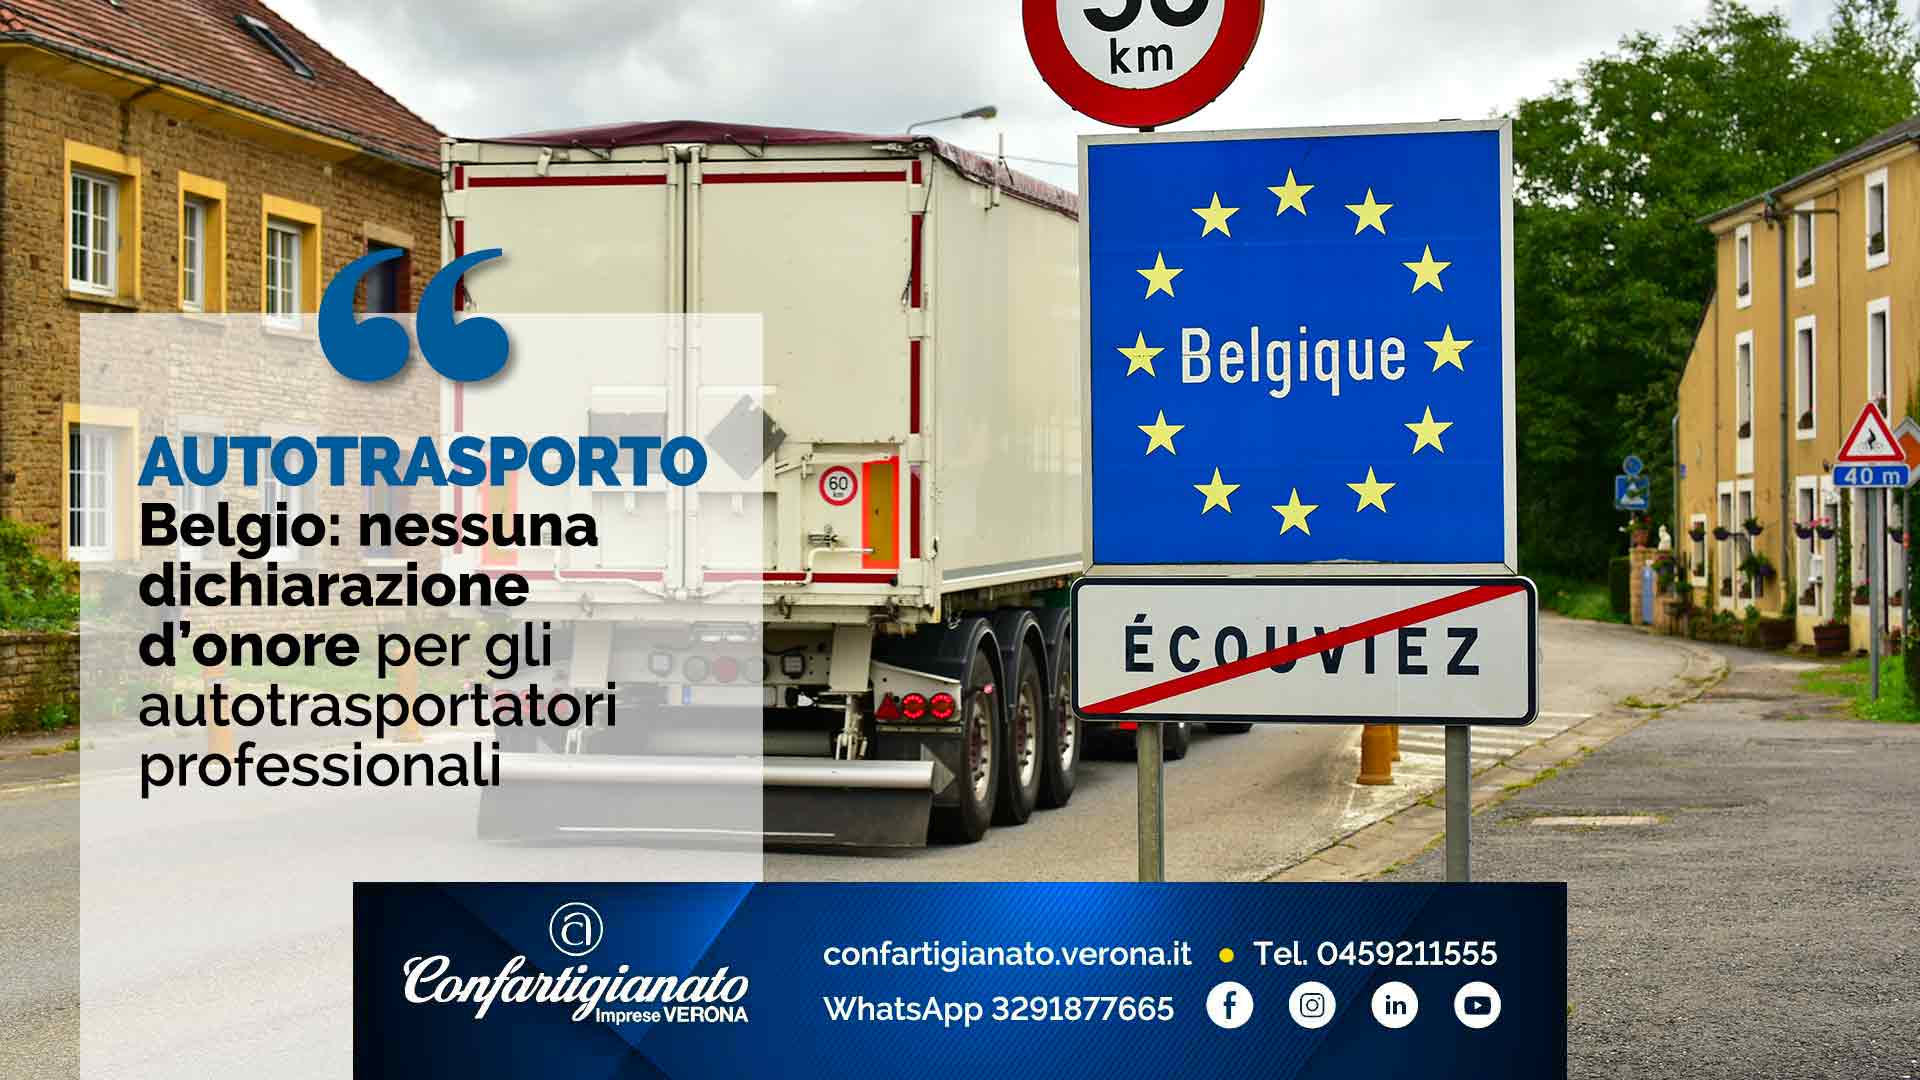 AUTOTRASPORTO – Belgio: nessuna dichiarazione d’onore per i trasportatori professionali